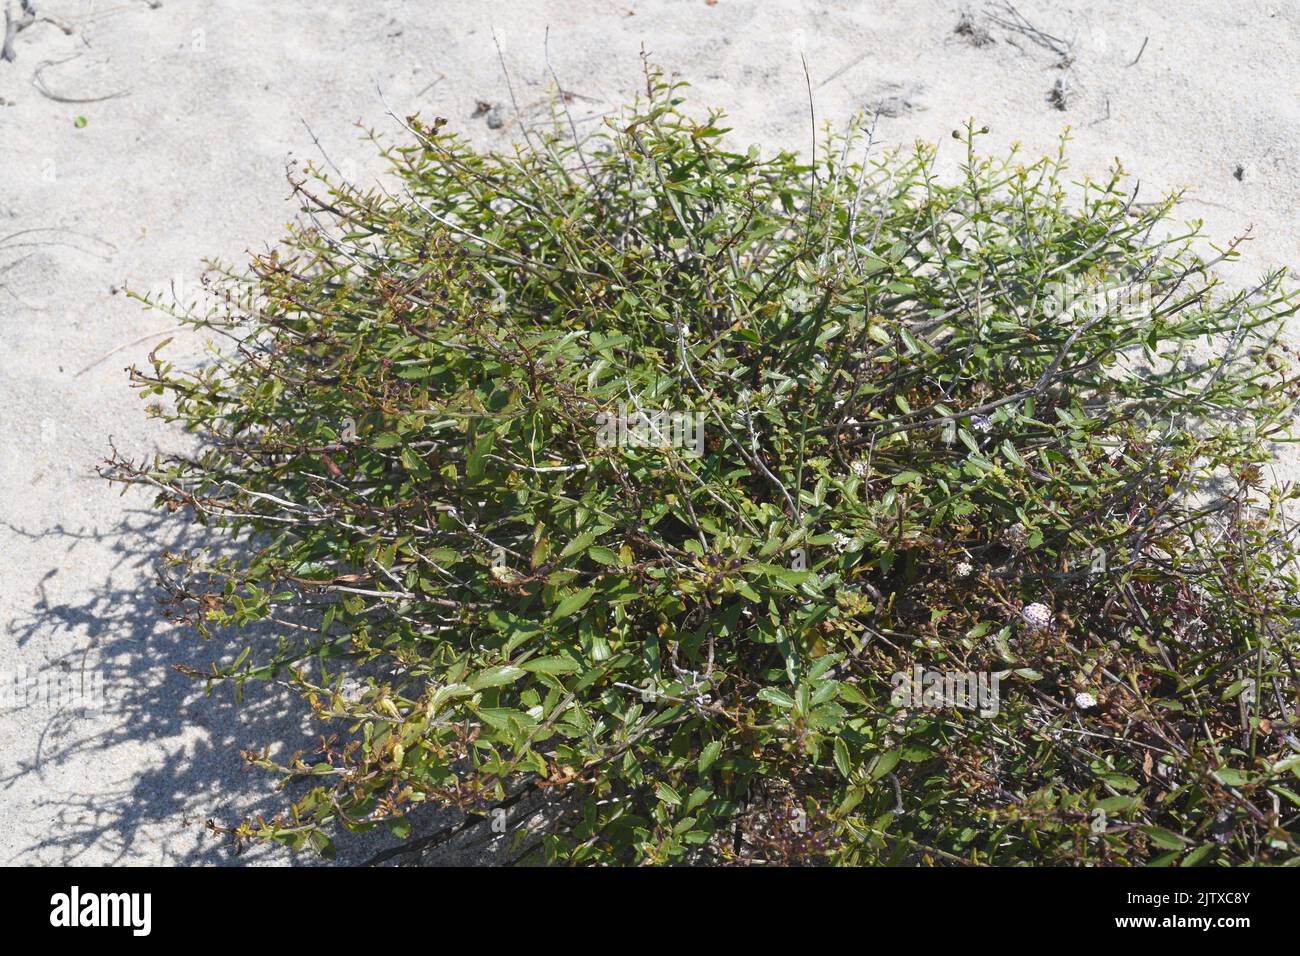 La Escrofularia perruna (Scrophularia frutescens) es un subarbusto nativo del oeste de la Península Ibérica, las costas de Andalucía y el noroeste de África. Esto Foto de stock